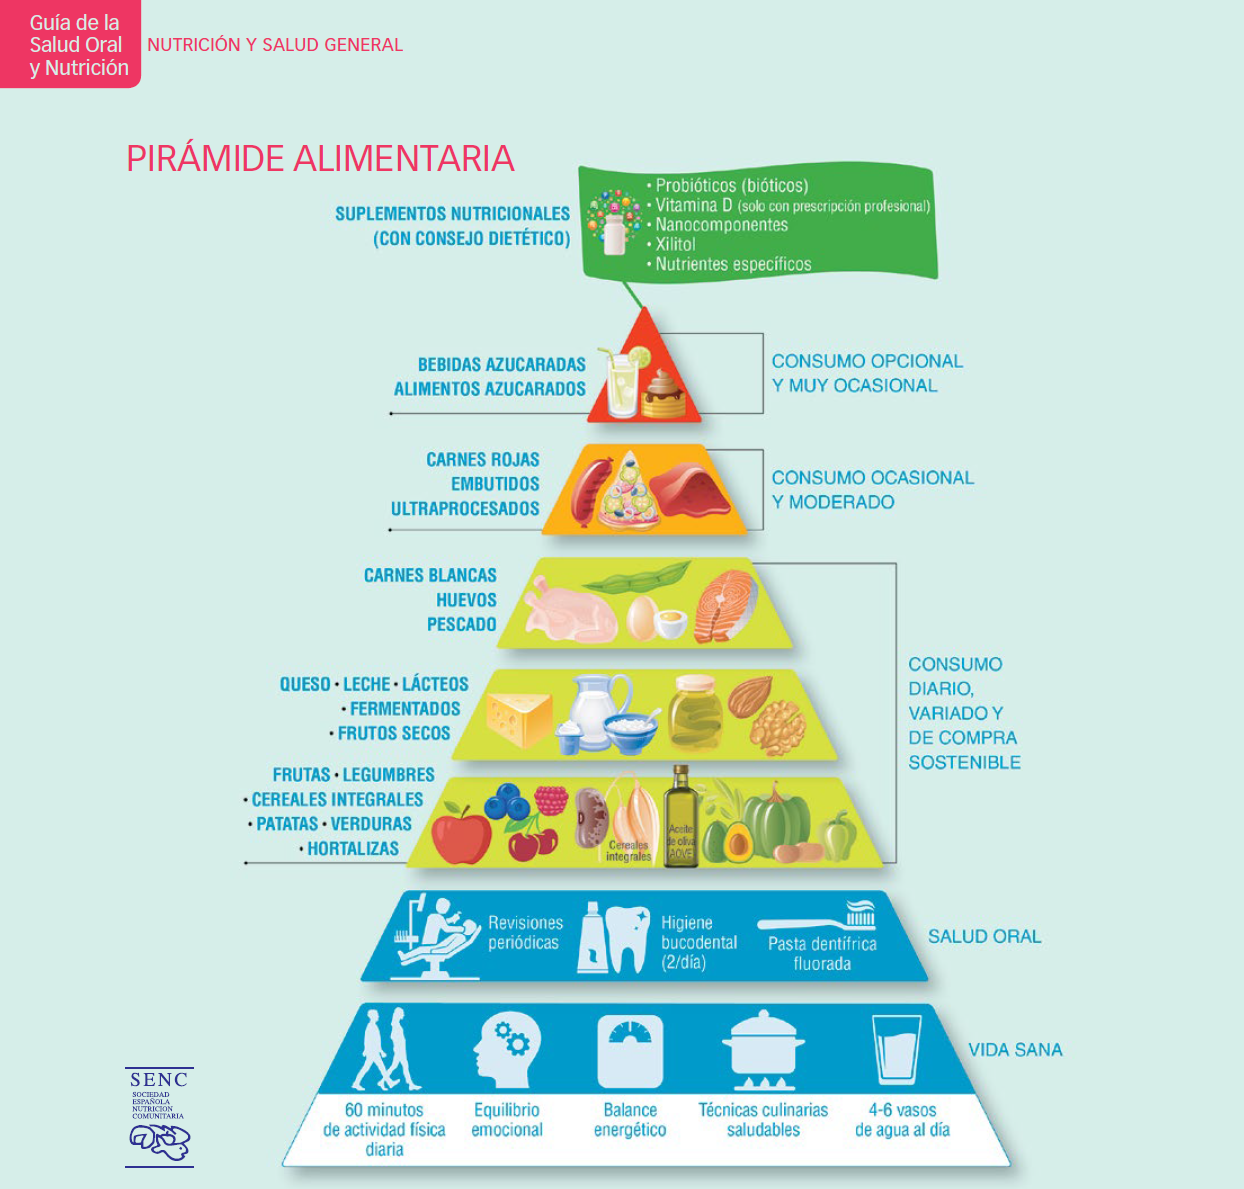 Pirámide nutricional que garantiza una salud oral de calidad